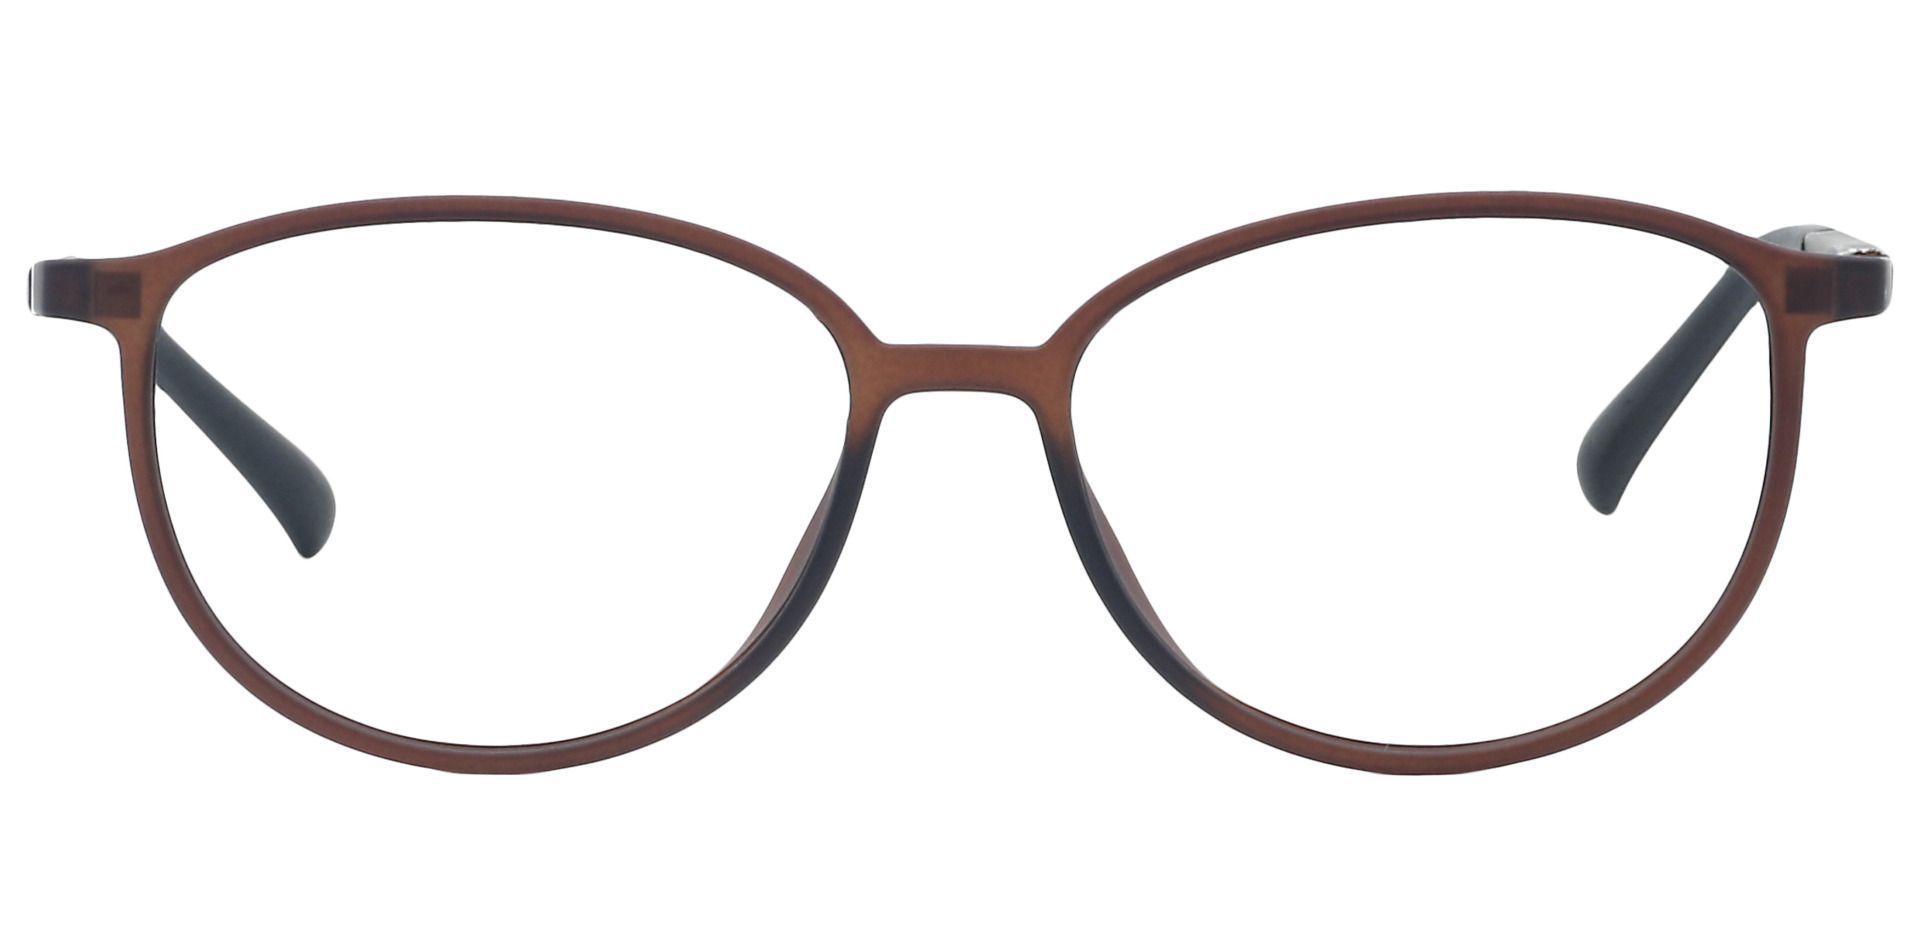 Melbourne Oval Non-Rx Glasses - Brown